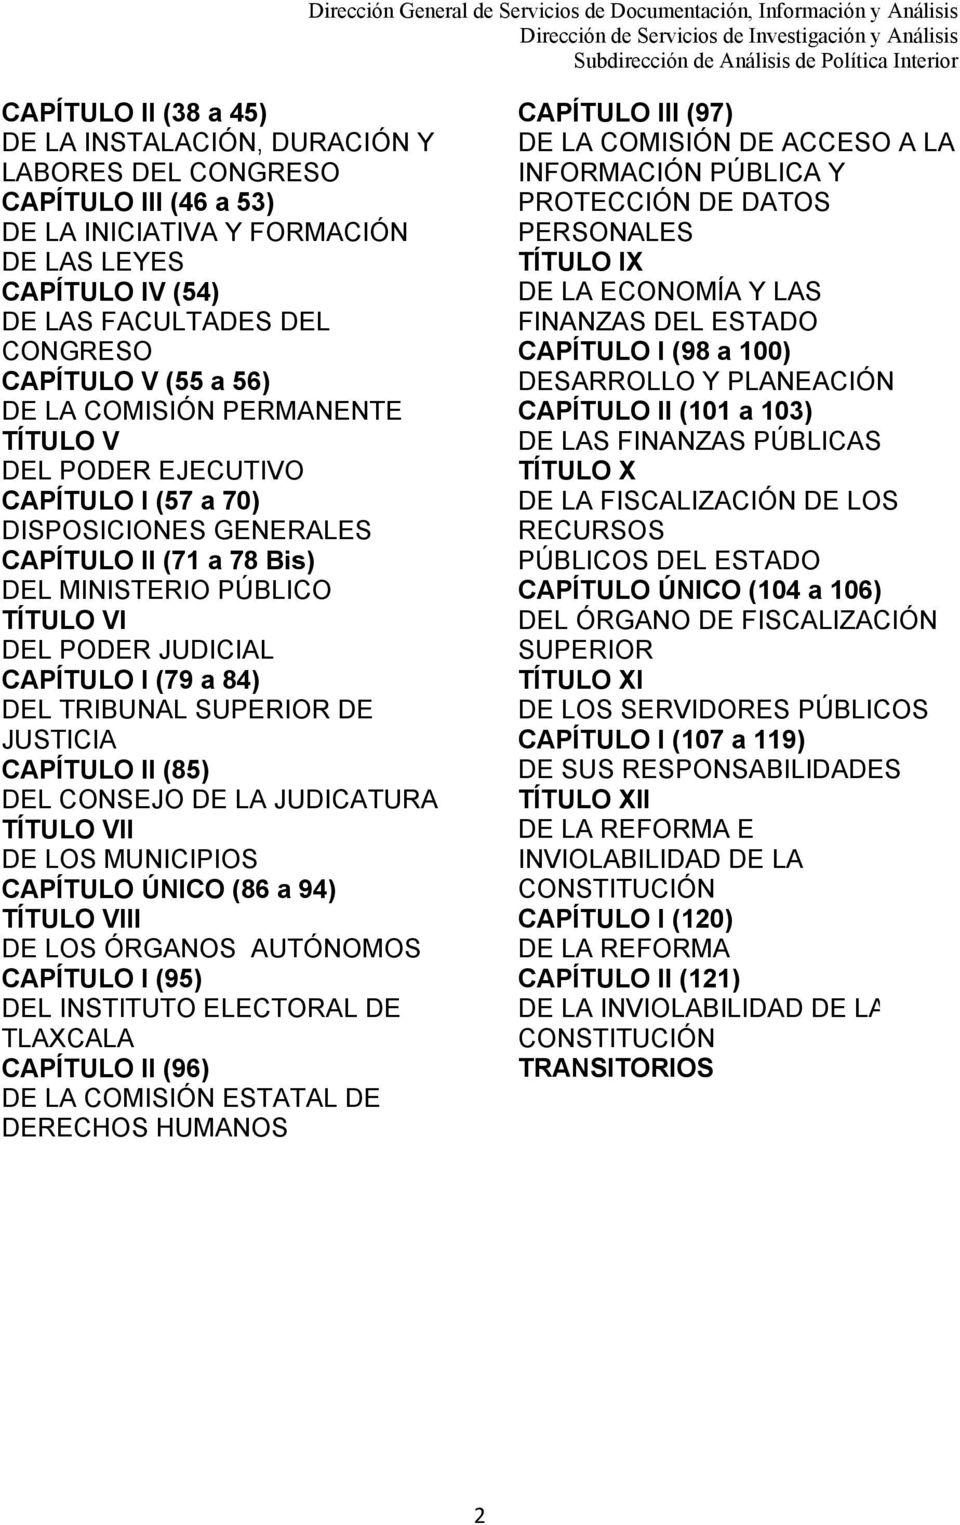 (79 a 84) DEL TRIBUNAL SUPERIOR DE JUSTICIA CAPÍTULO II (85) DEL CONSEJO DE LA JUDICATURA TÍTULO VII DE LOS MUNICIPIOS CAPÍTULO ÚNICO (86 a 94) TÍTULO VIII DE LOS ÓRGANOS AUTÓNOMOS CAPÍTULO I (95)